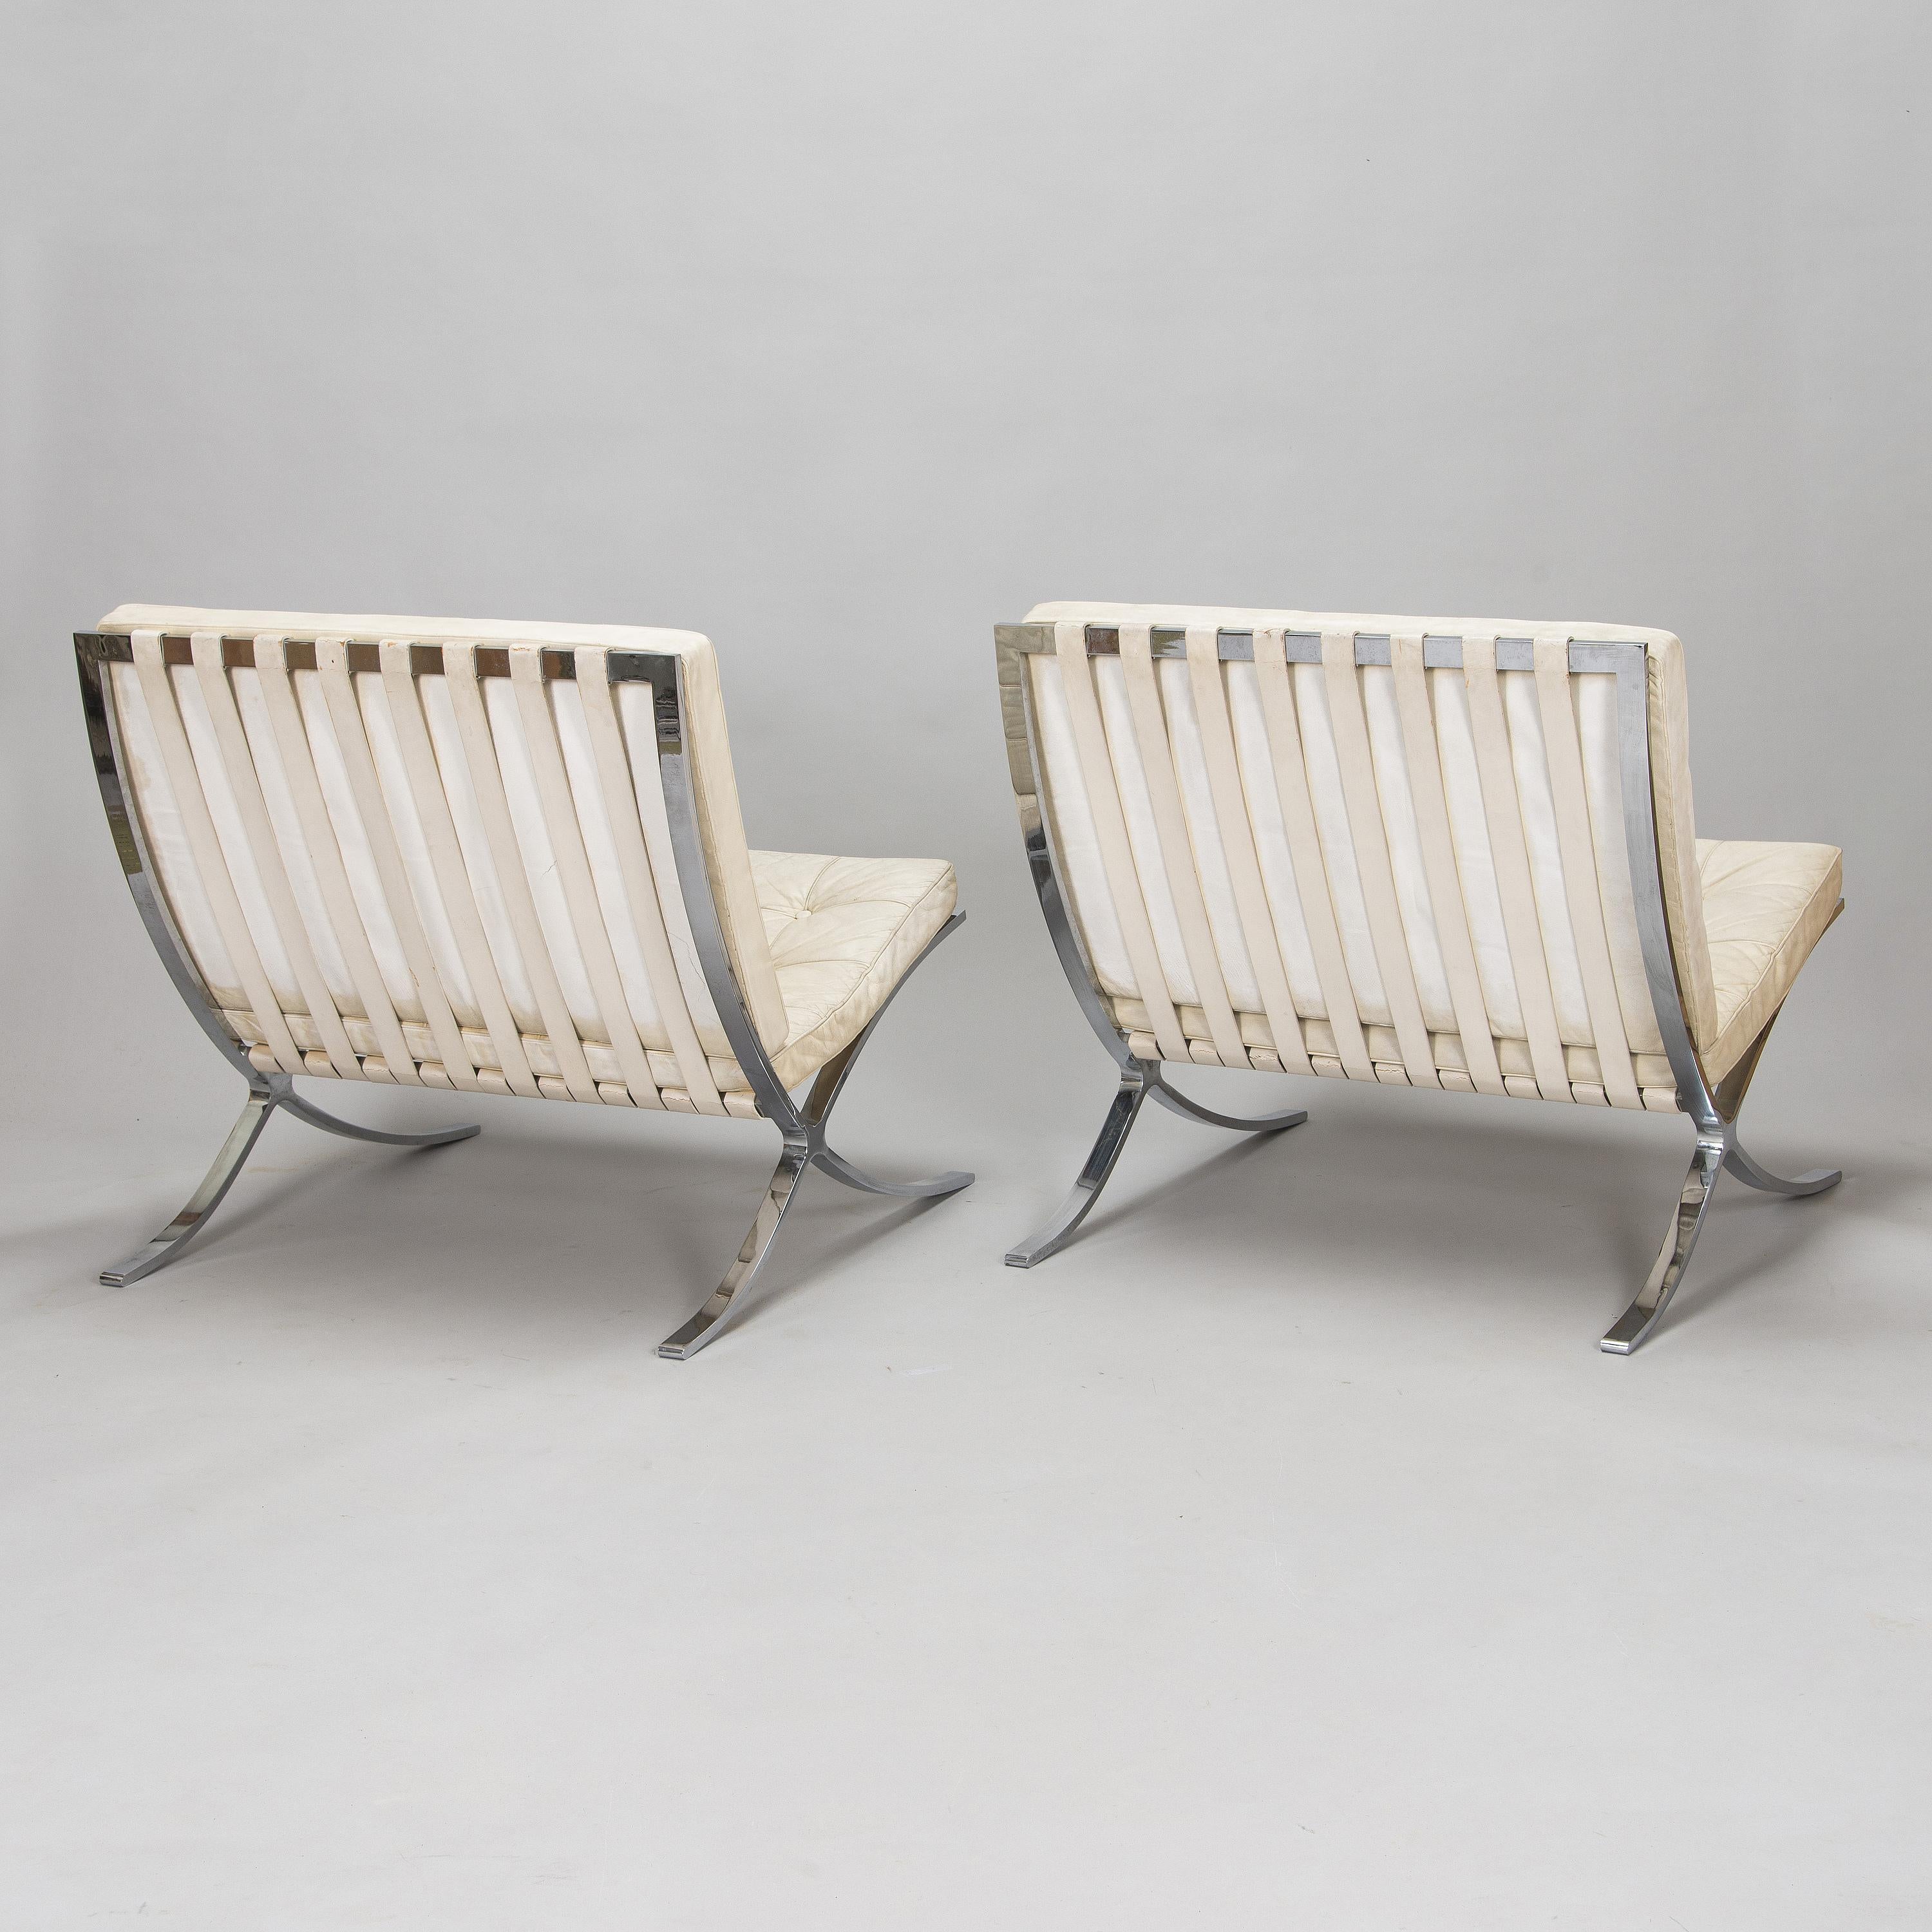 Chaise 'Barcelona' de Ludwig Mies van der Rohe pour Steele fabriquée aux USA en 1965Pied en acier chromé, coussins amovibles avec revêtement en cuir blanc osseux. Cette pièce est un original de Mies Van der Rohe fabriqué par Know aux Etats-Unis. La